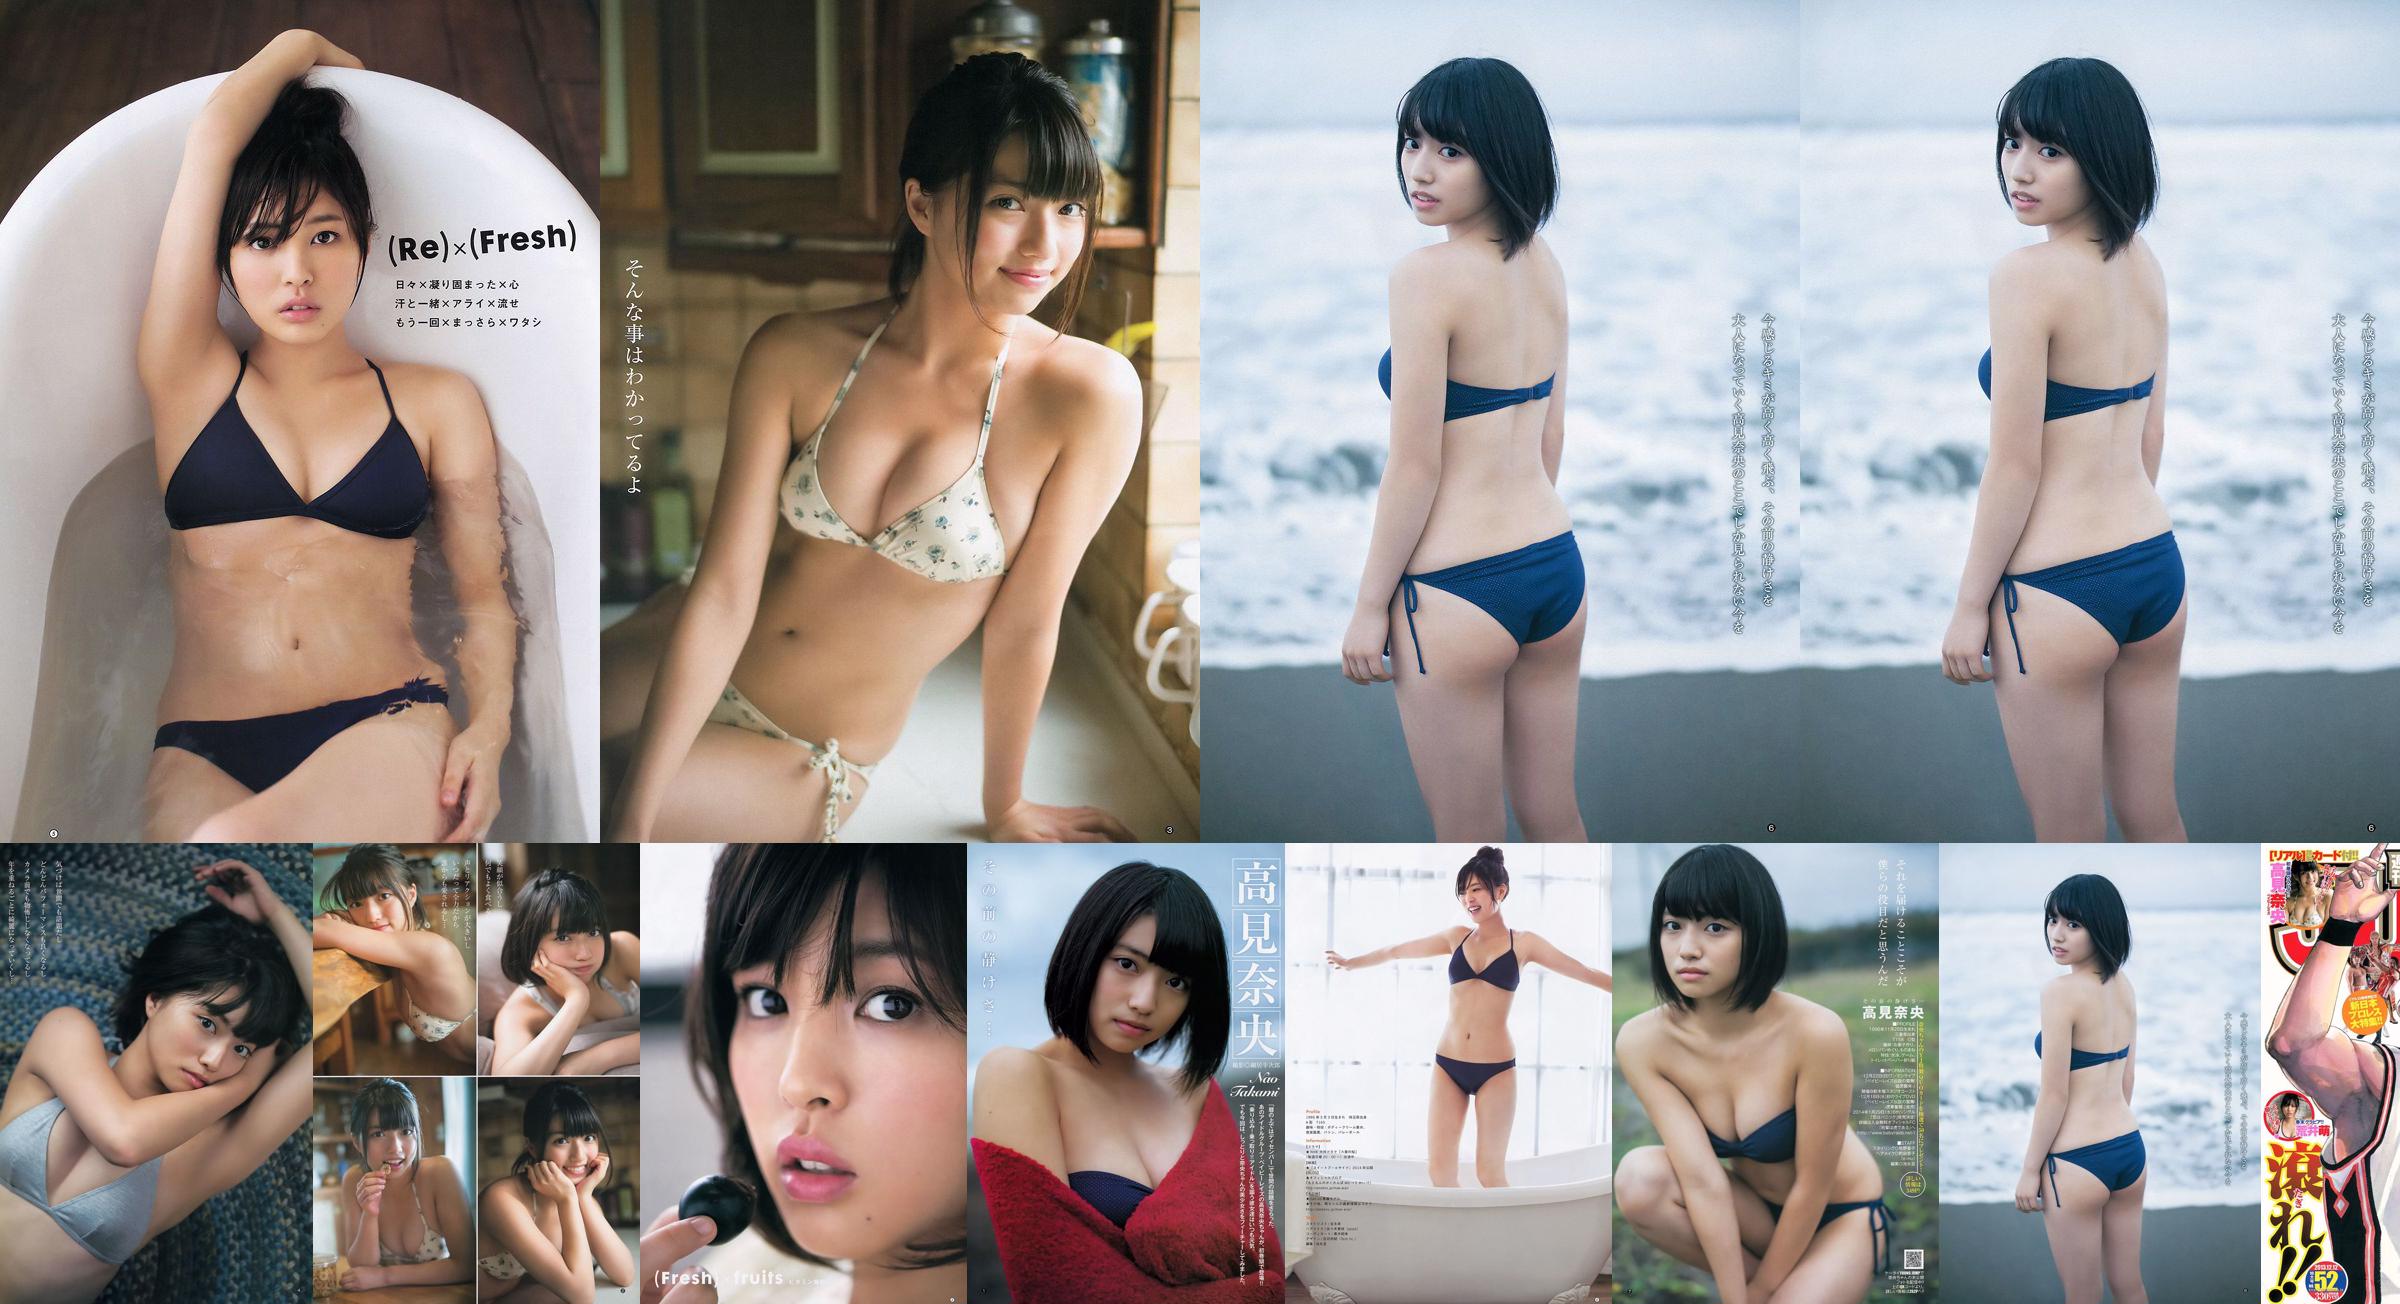 Takamina Nao Arai Moe [Tygodniowy skok dla młodych] 2013 No.52 Photo Magazine No.284b9d Strona 3